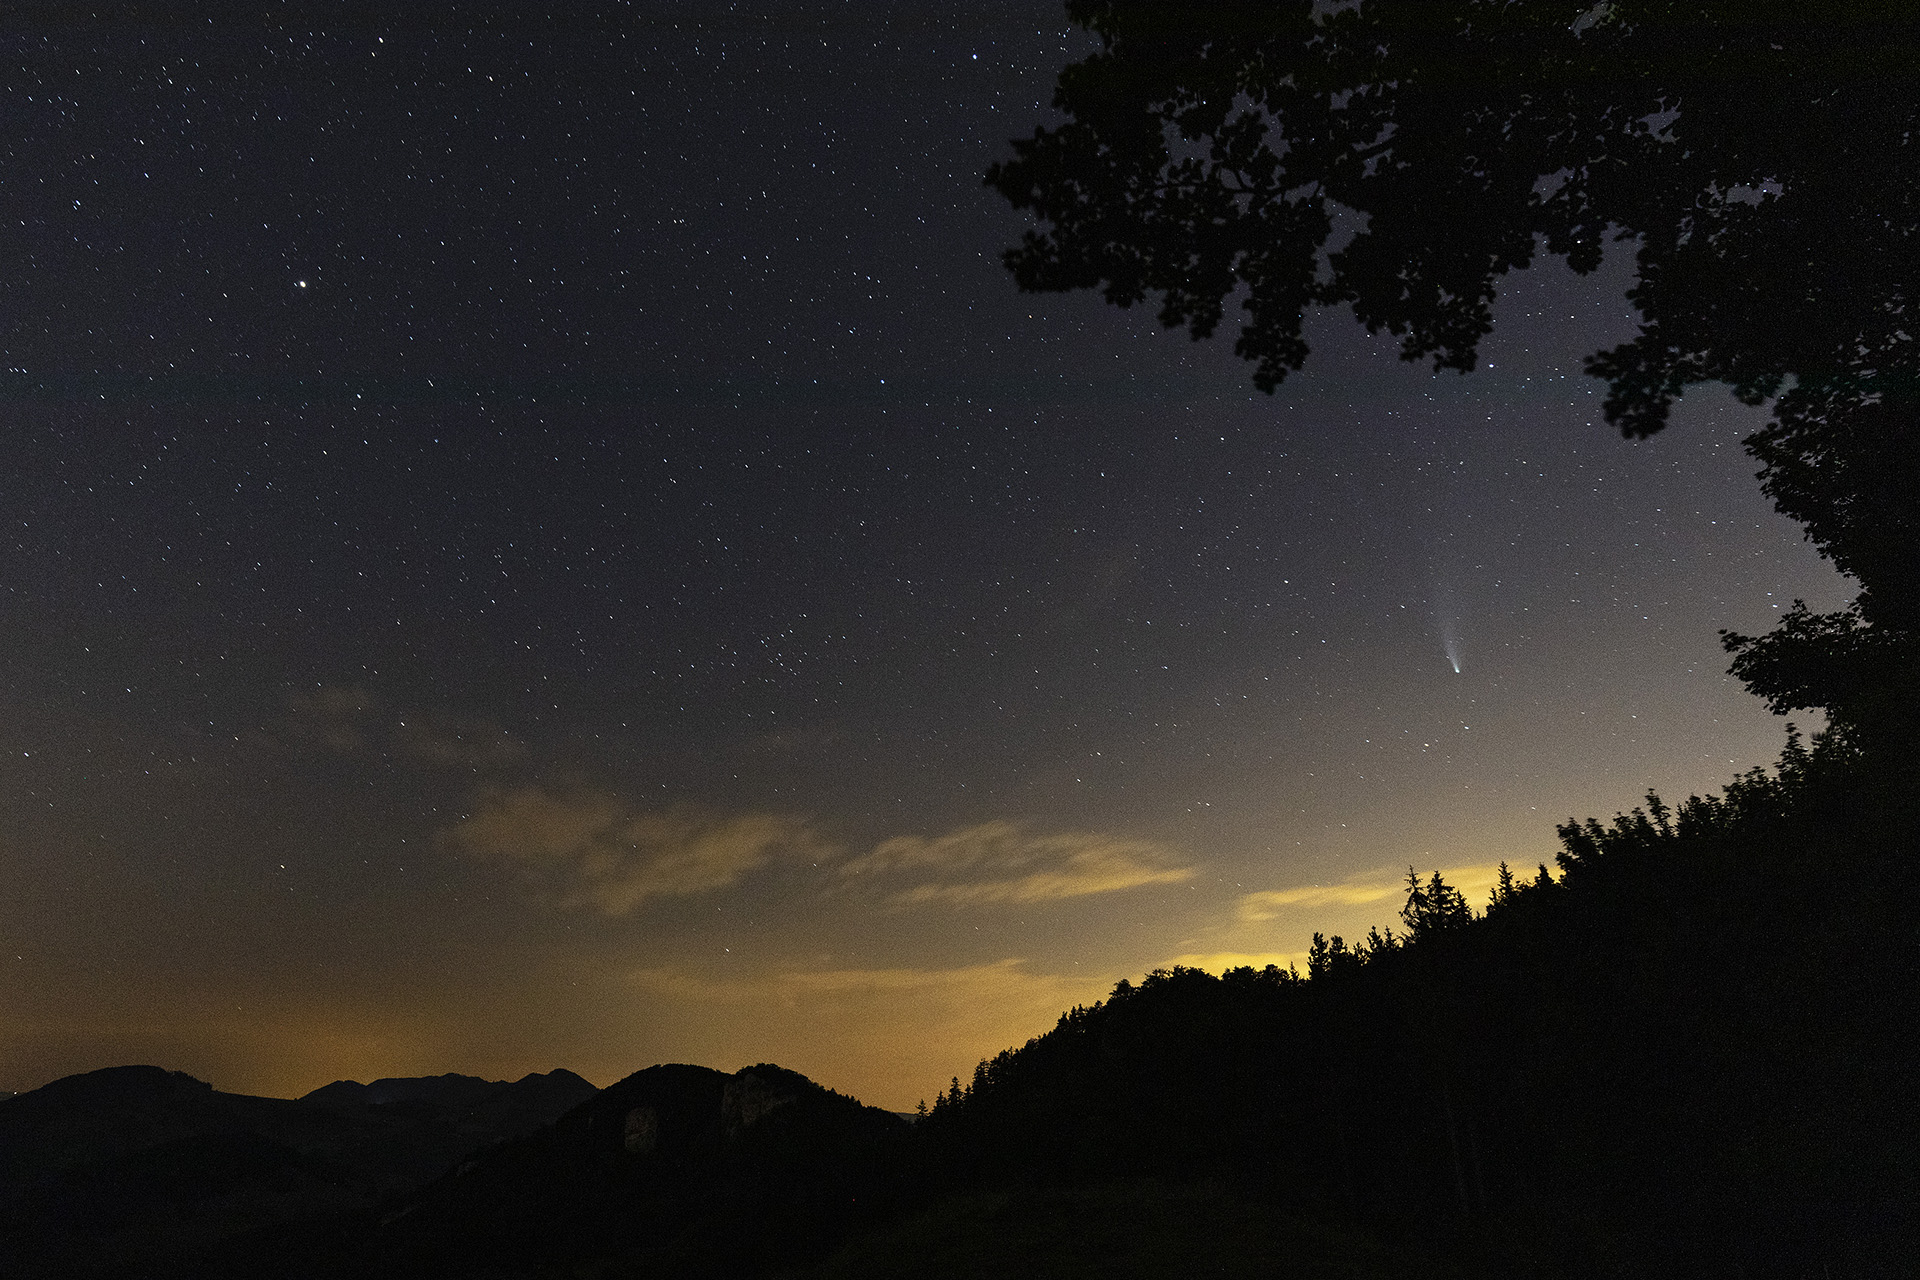 Comet C/2020 F3, Neowise, above Jura mountain forest night sky, Chilchzimmersattel, Basel-Landschaft, Switzerland